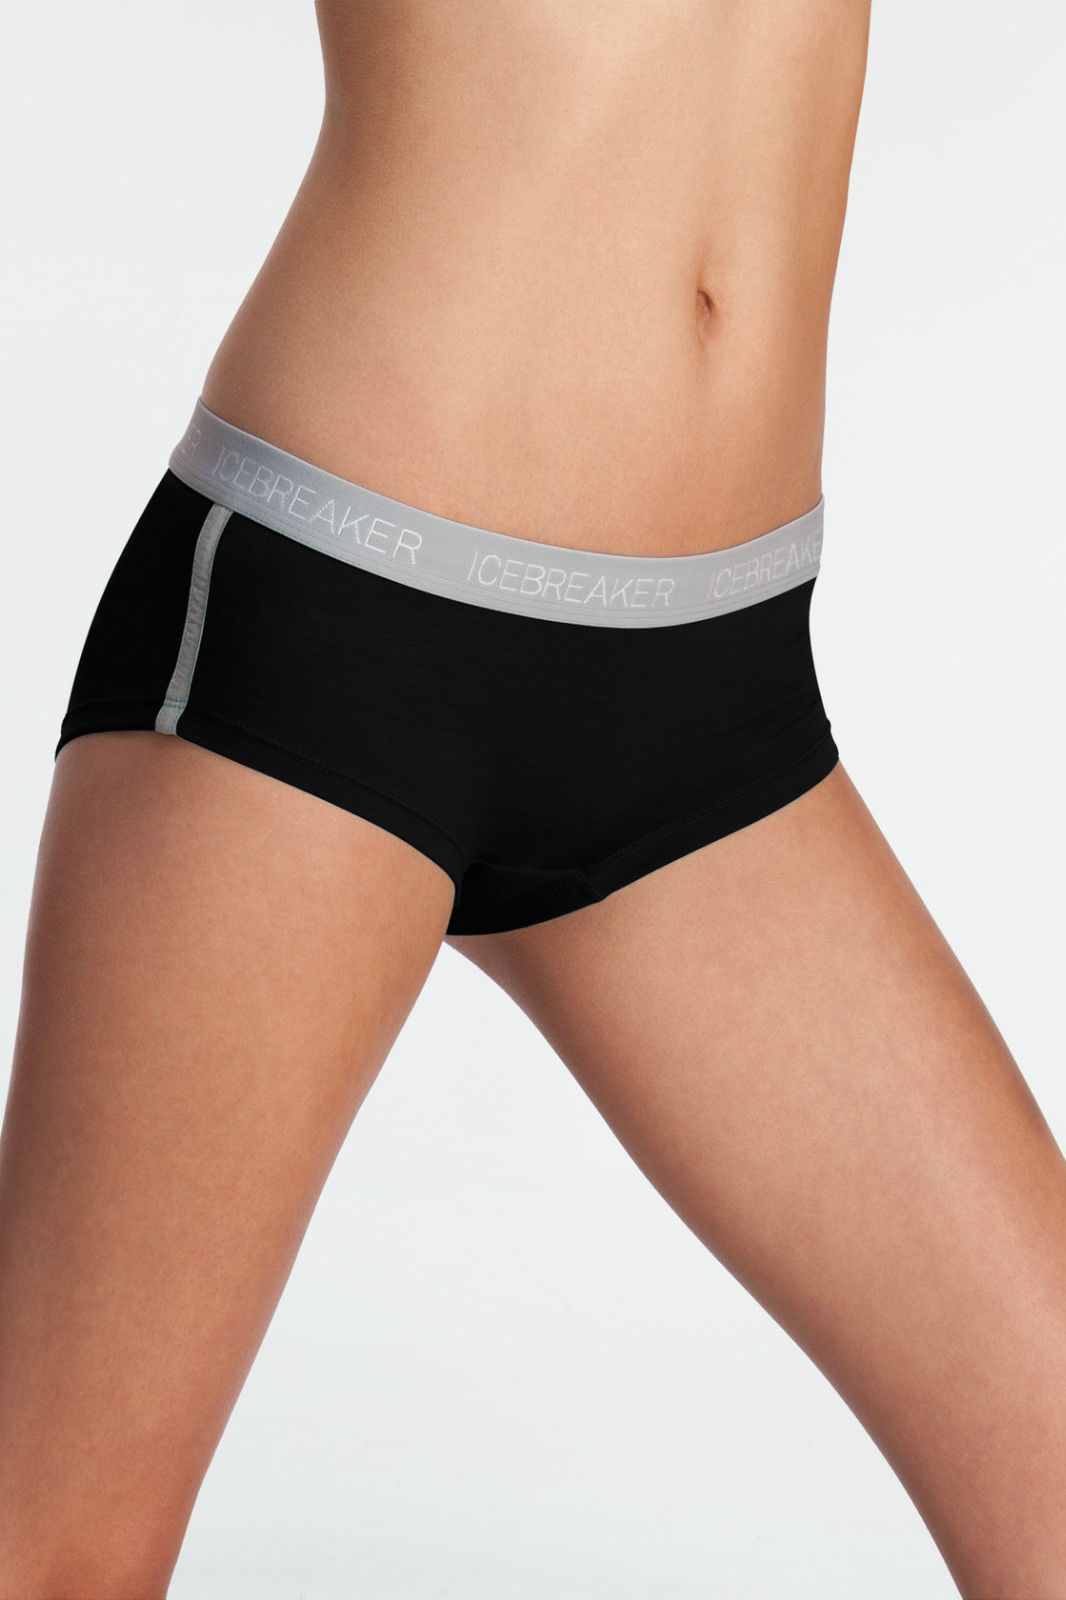 Icebreaker Sprite Hot Pants Boy-Shorts Underwear XS - ScoutTech